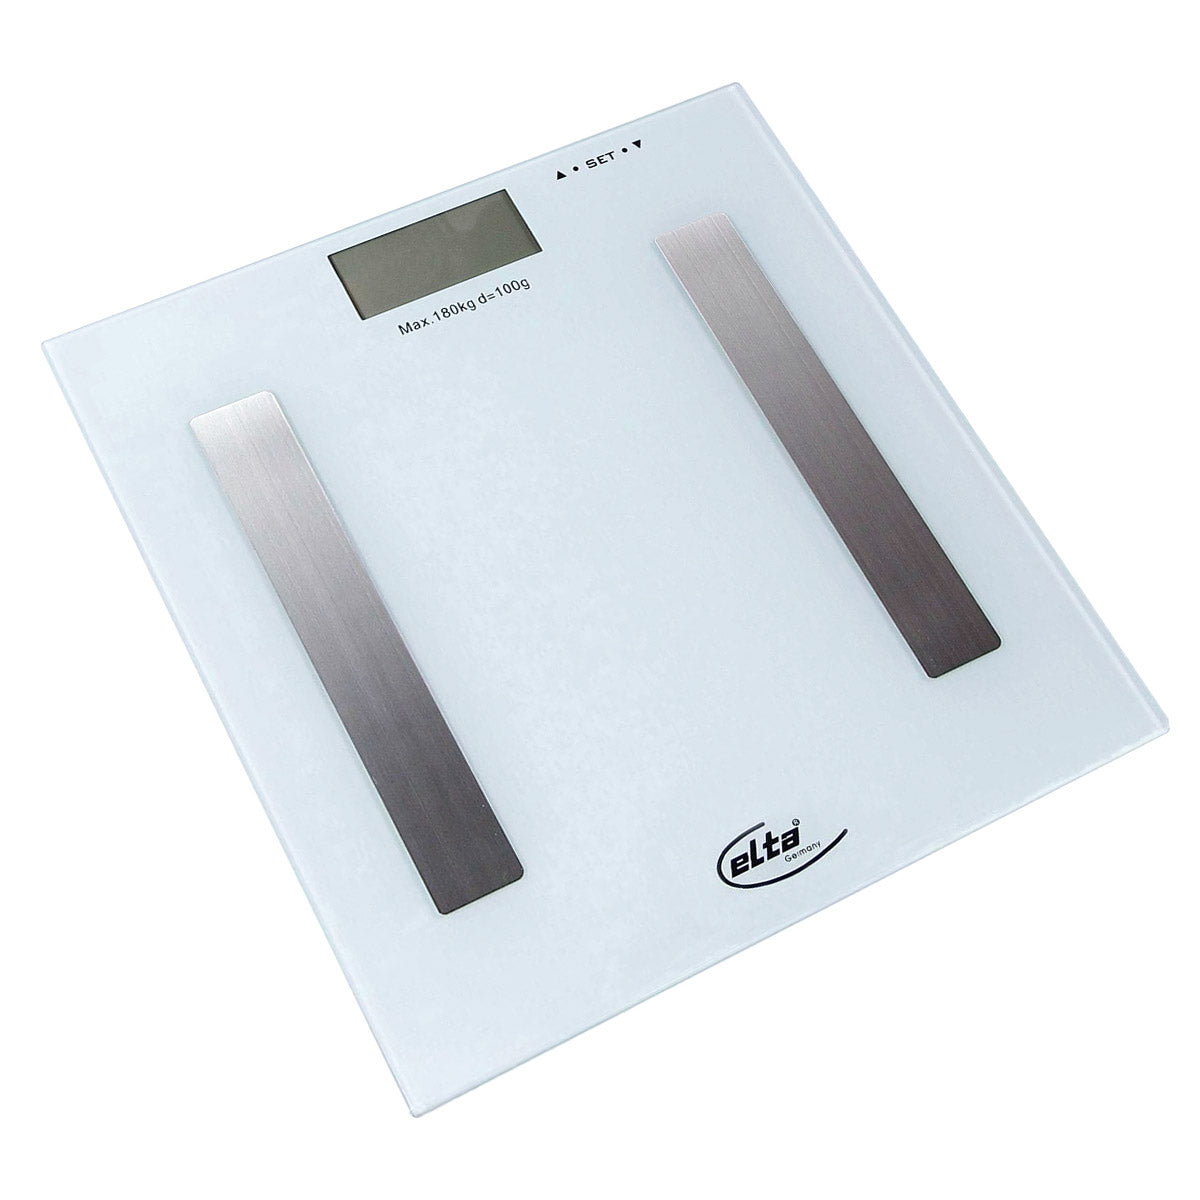 Ariko Elta Digitale Body - Fit Weegschaal - Personenweegschaal - Analyseweegschaal - Wit - Grijs - Afmetingen 28 x 28 x 2.5 Cm - Maximaal 180 KG - Inclusief 2 x AAA batterijen